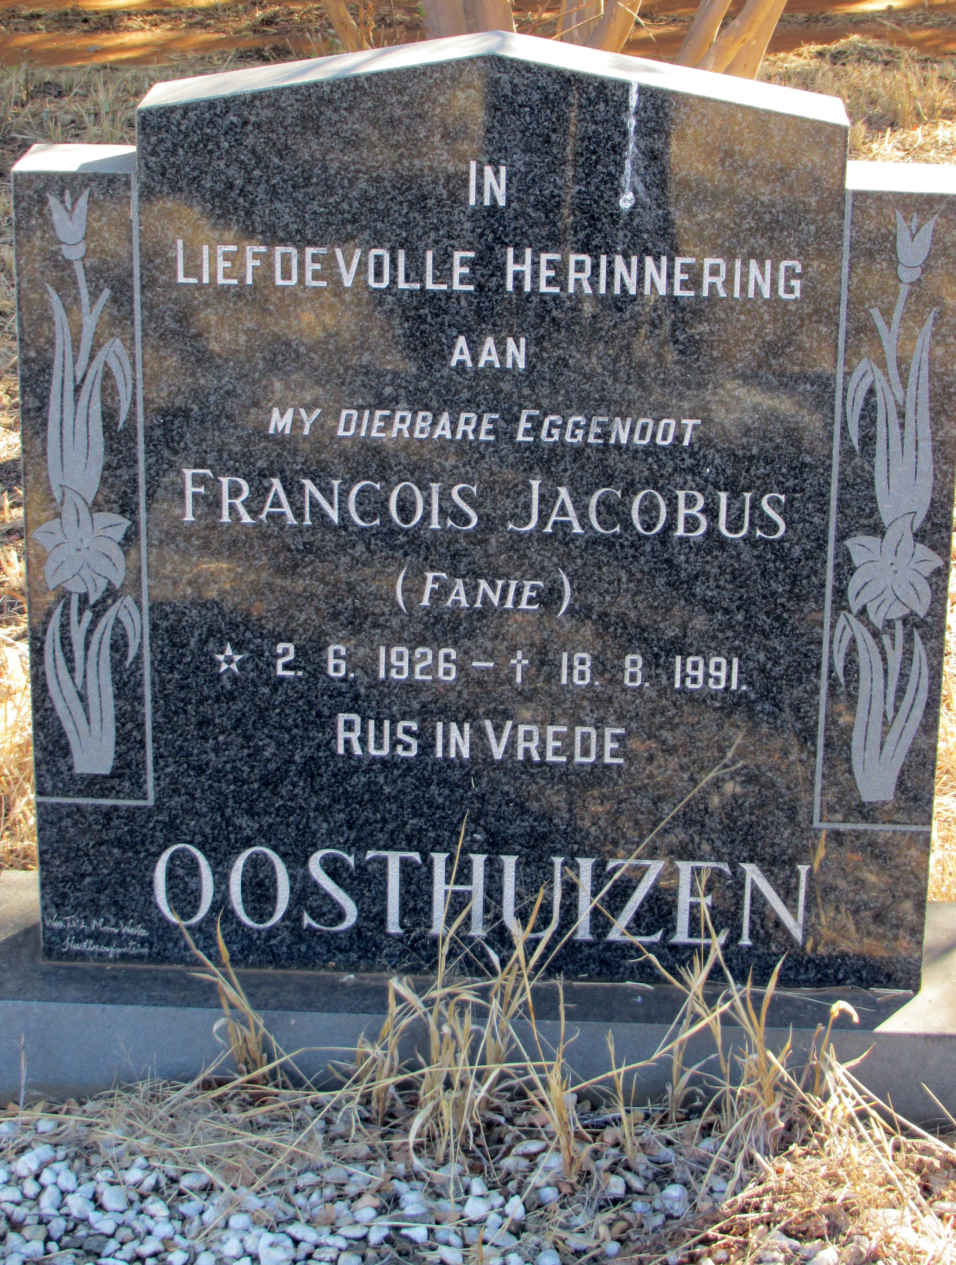 OOSTHUIZEN Francois Jacobus 1926-1991